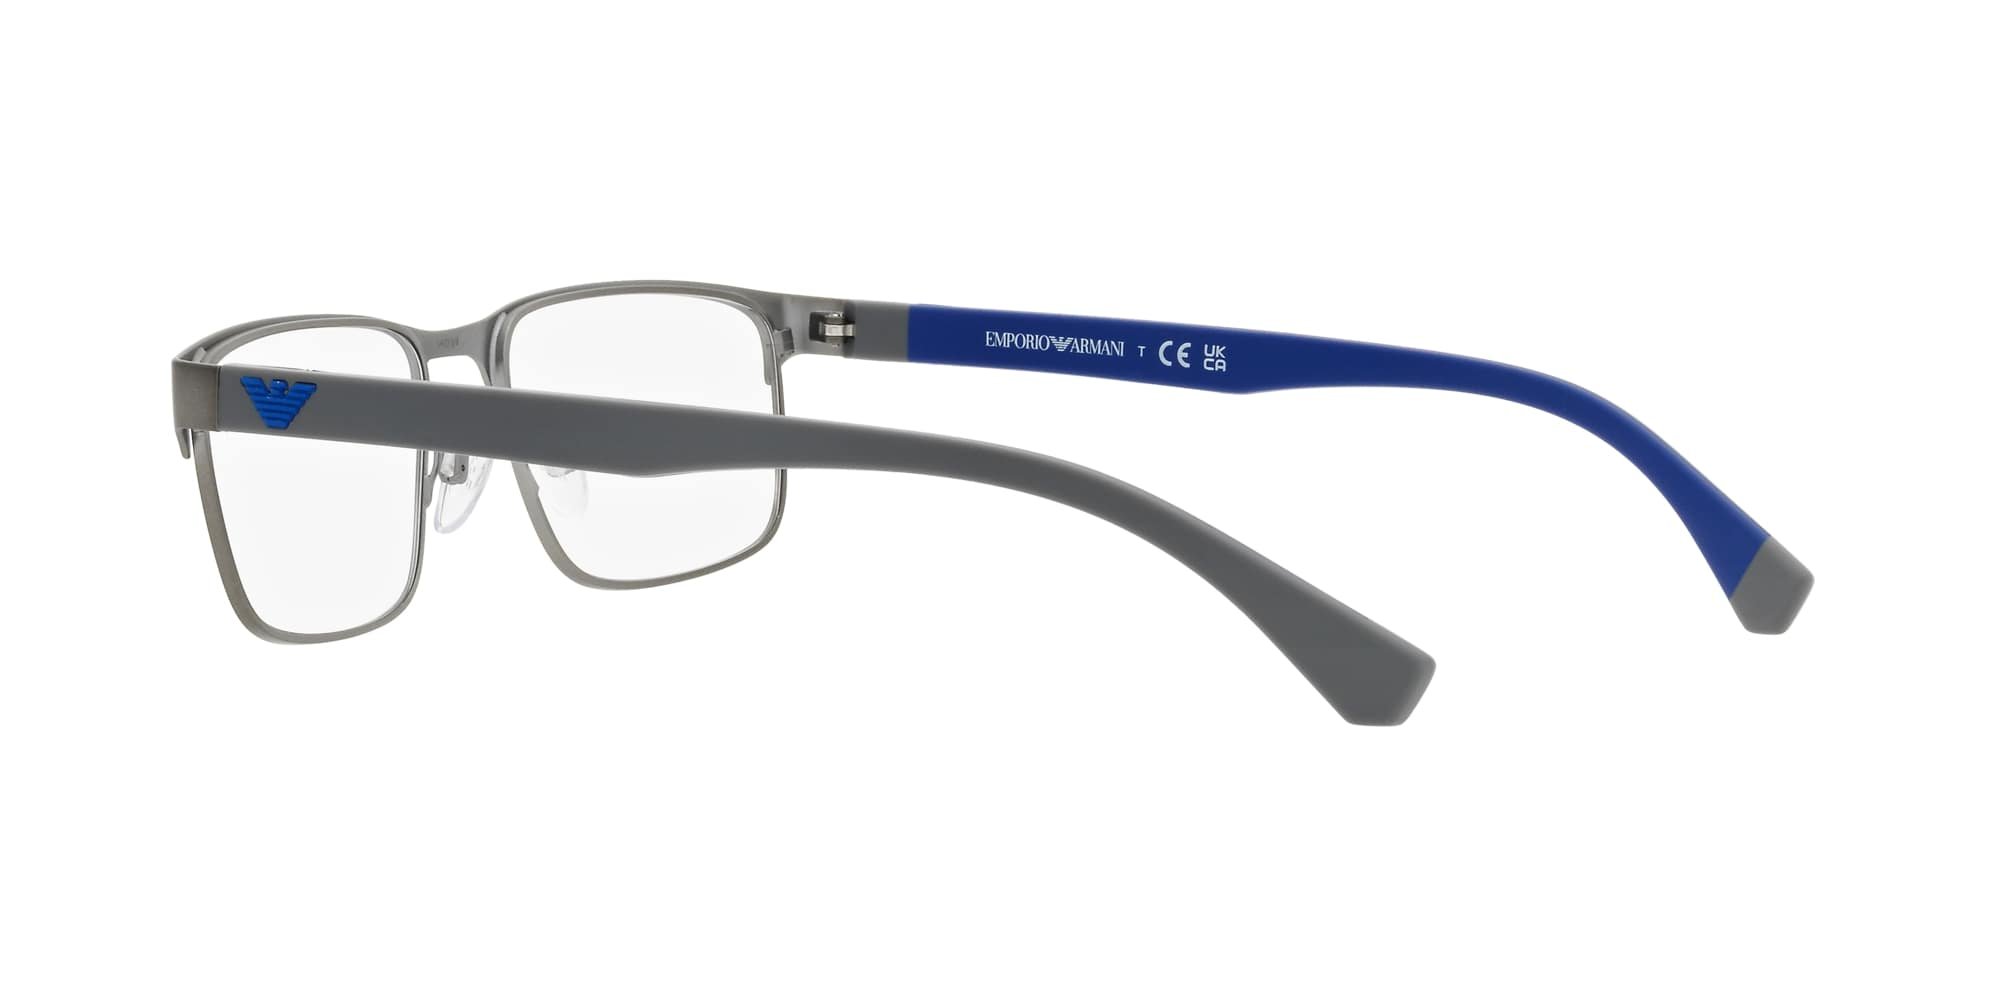 Das Bild zeigt die Korrektionsbrille EA1105 3095 von der Marke Emporio Armani in Gunmetal.